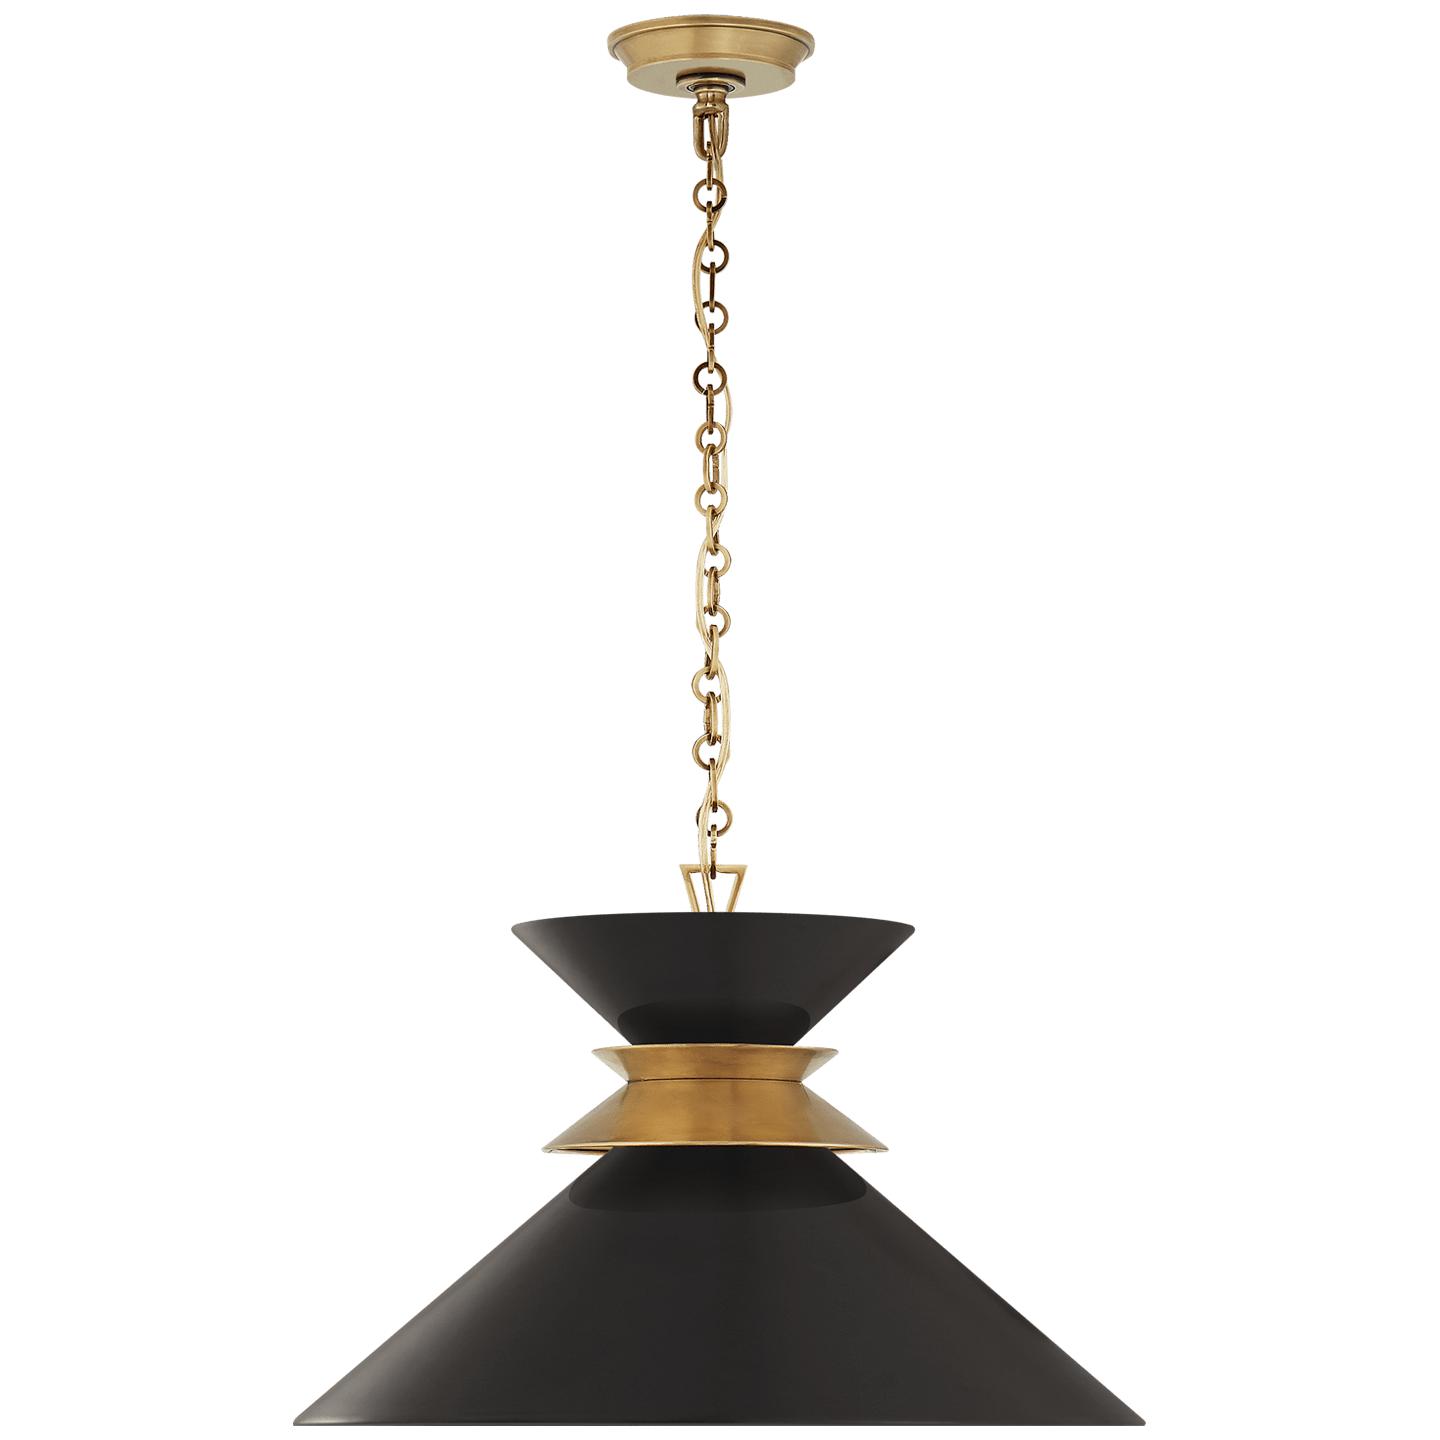 Купить Подвесной светильник Alborg Large Stacked Pendant в интернет-магазине roooms.ru